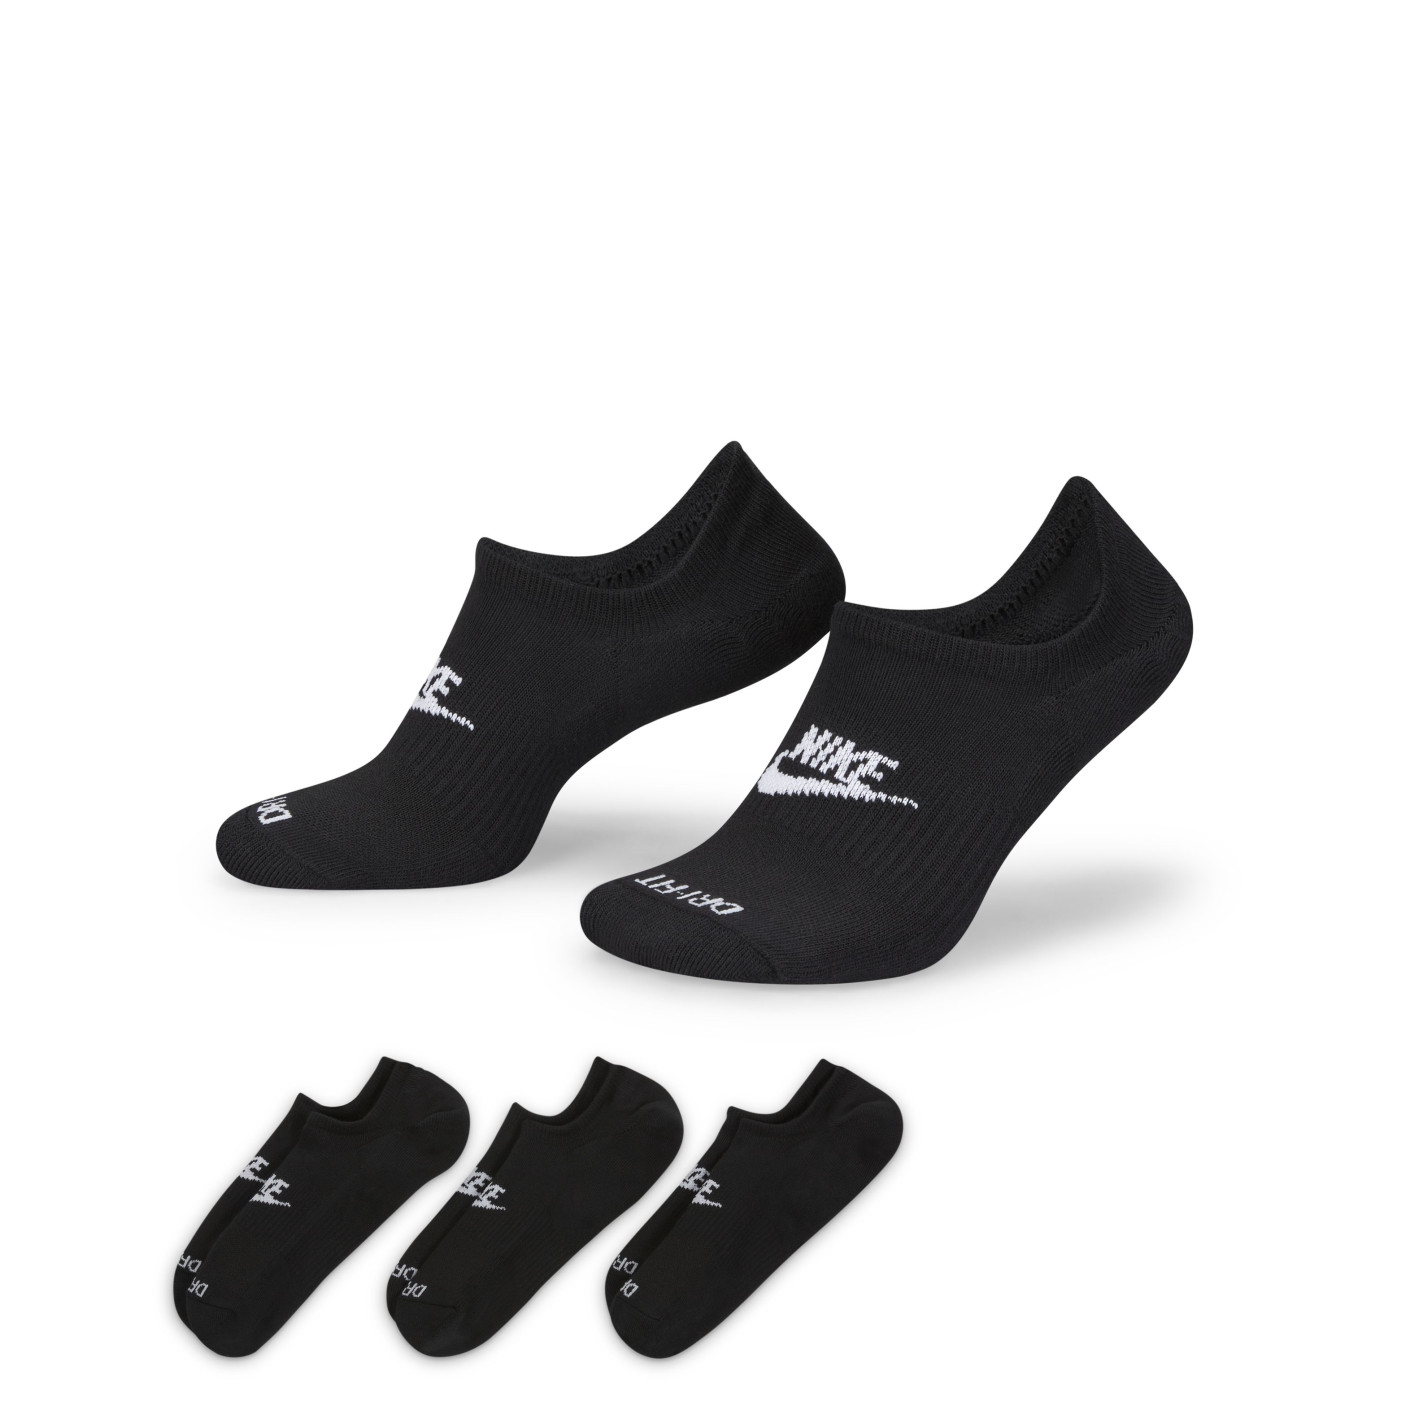 Nike Everyday Plus Cushioned Socquettes de Sport Rembourrées Lot 3-Pack Noir Blanc